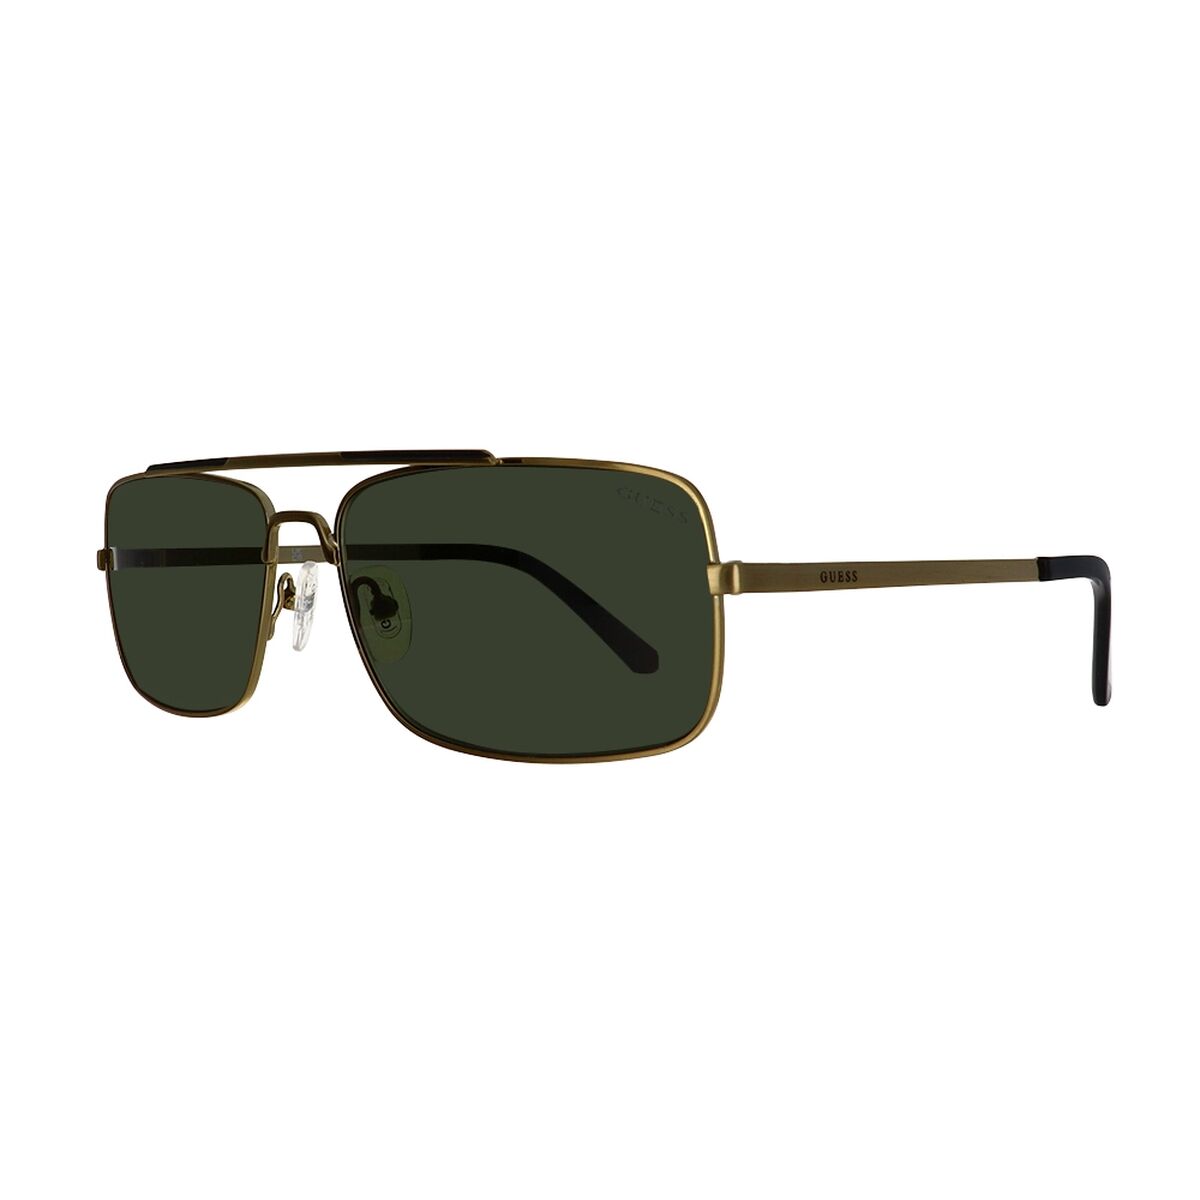 Men's Sunglasses Guess GU00060-33N-60